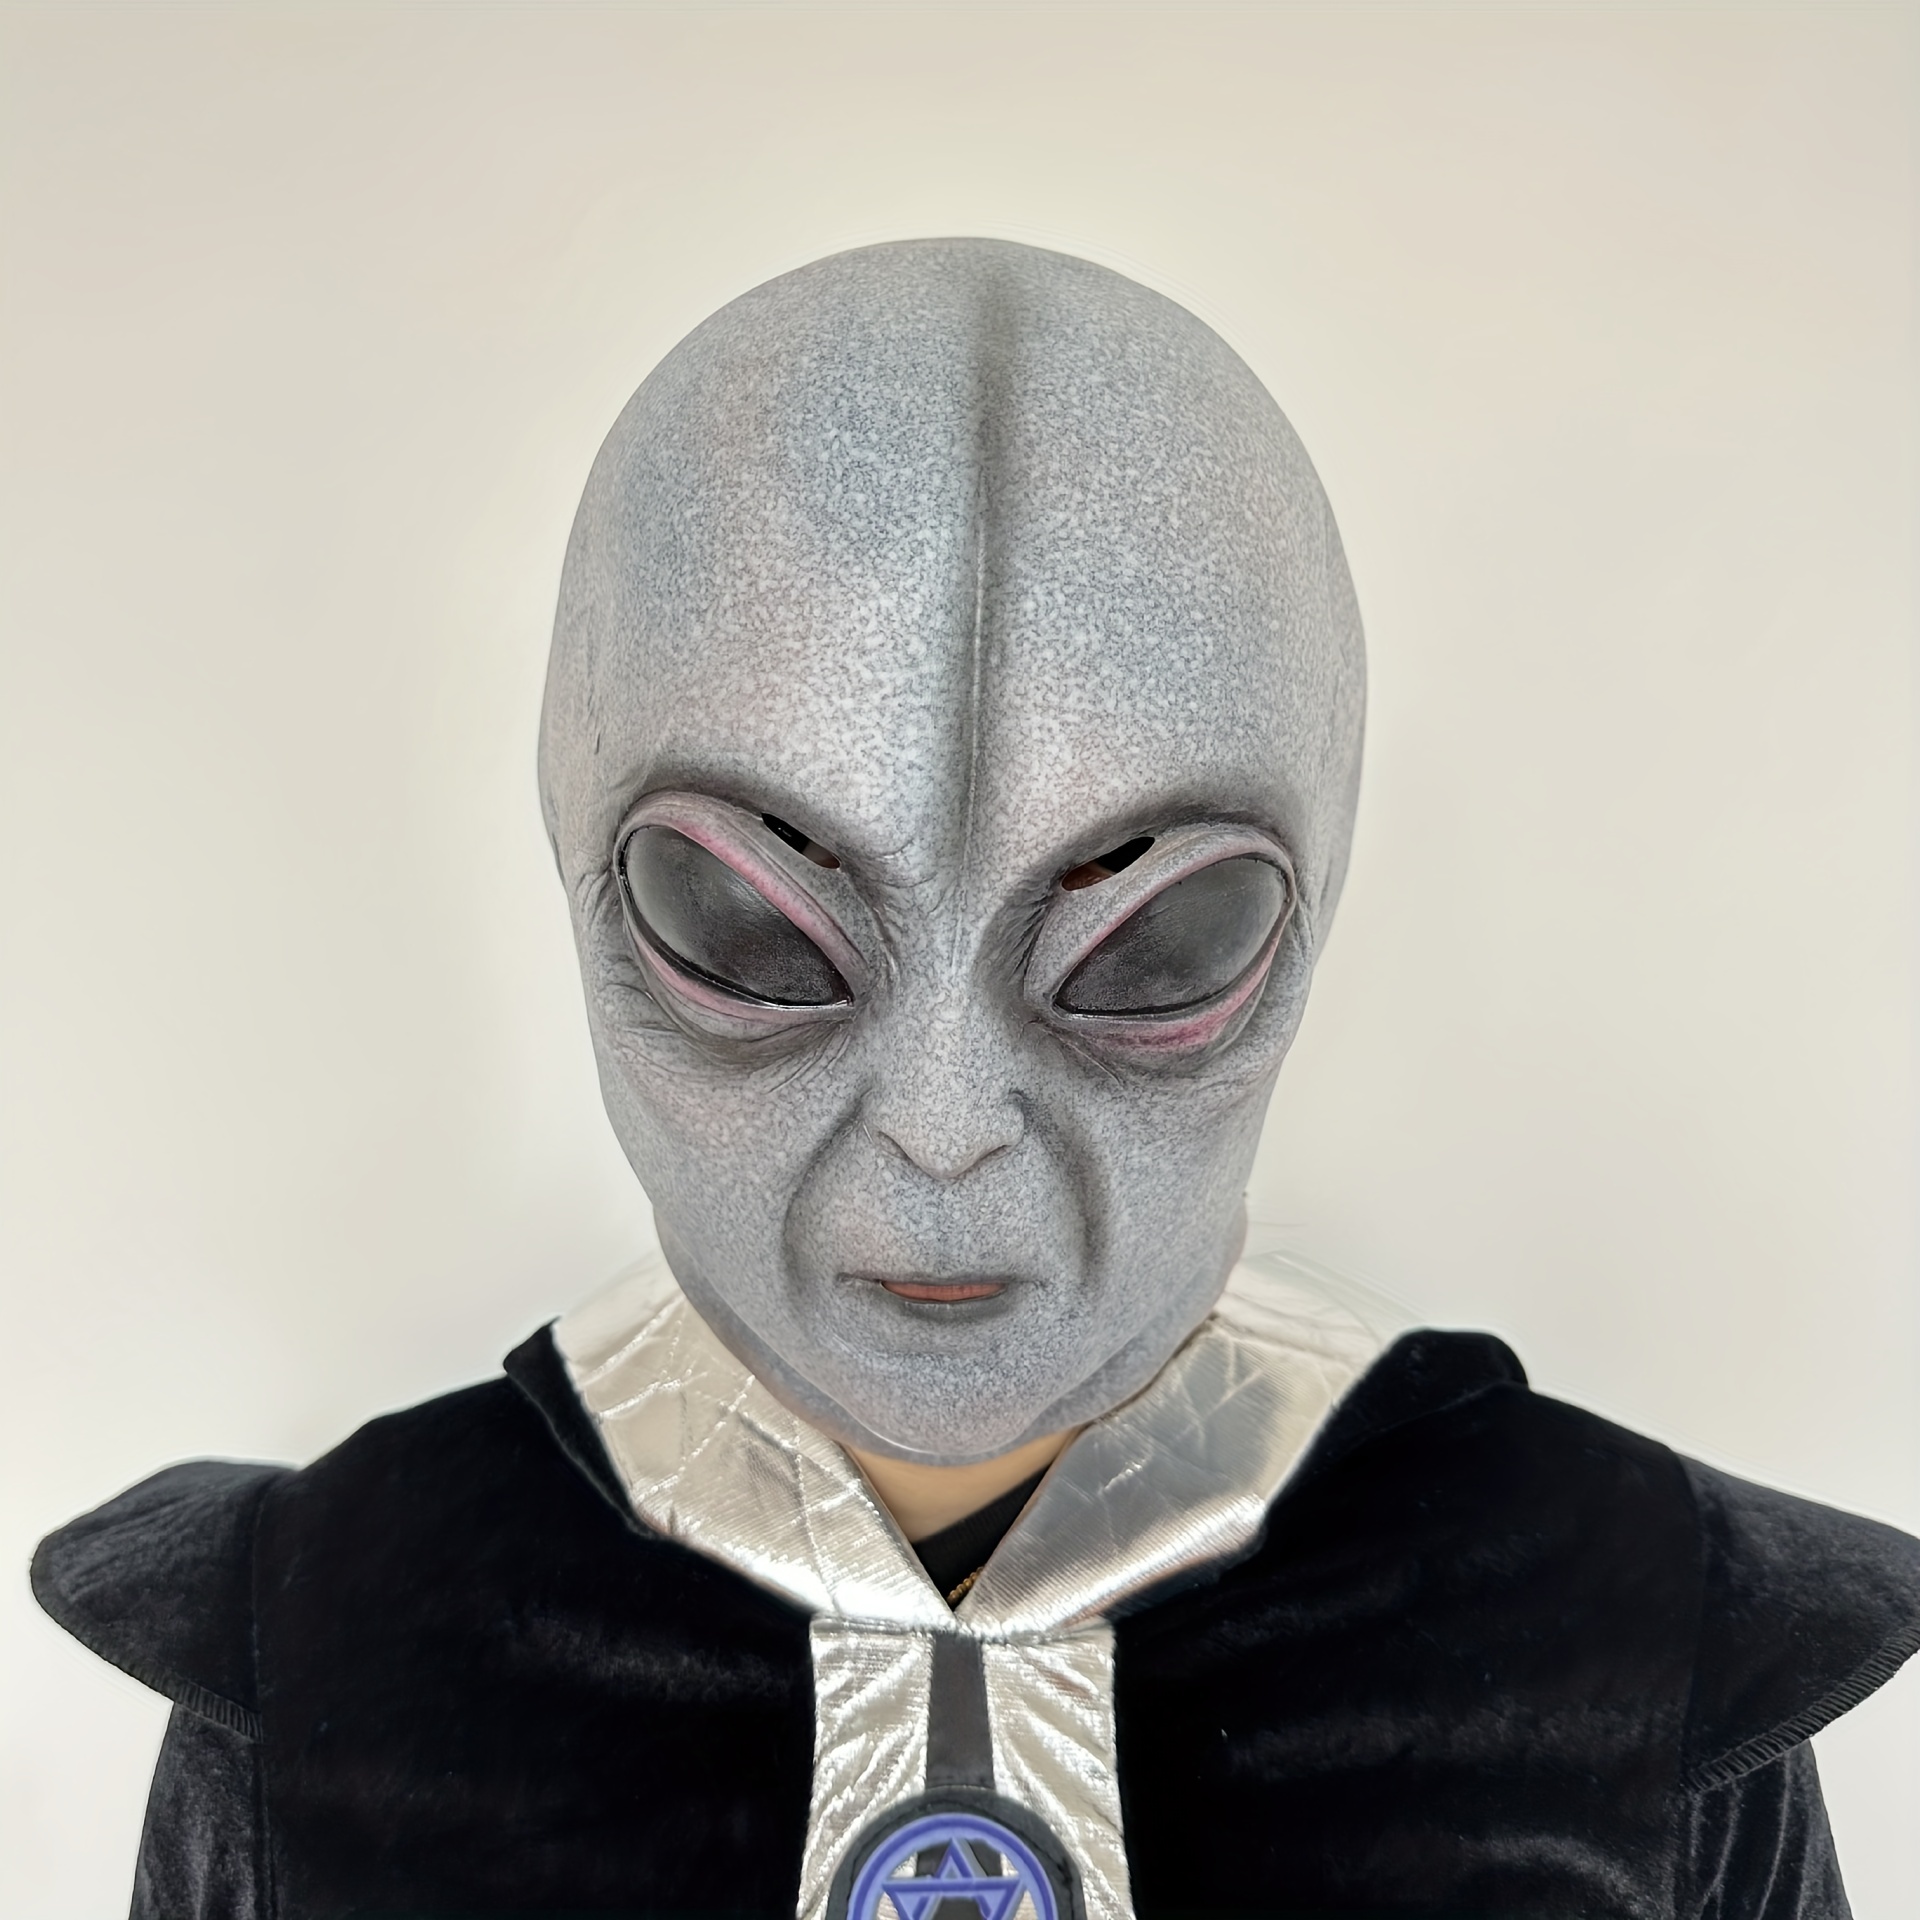 Máscara de alienígena gris